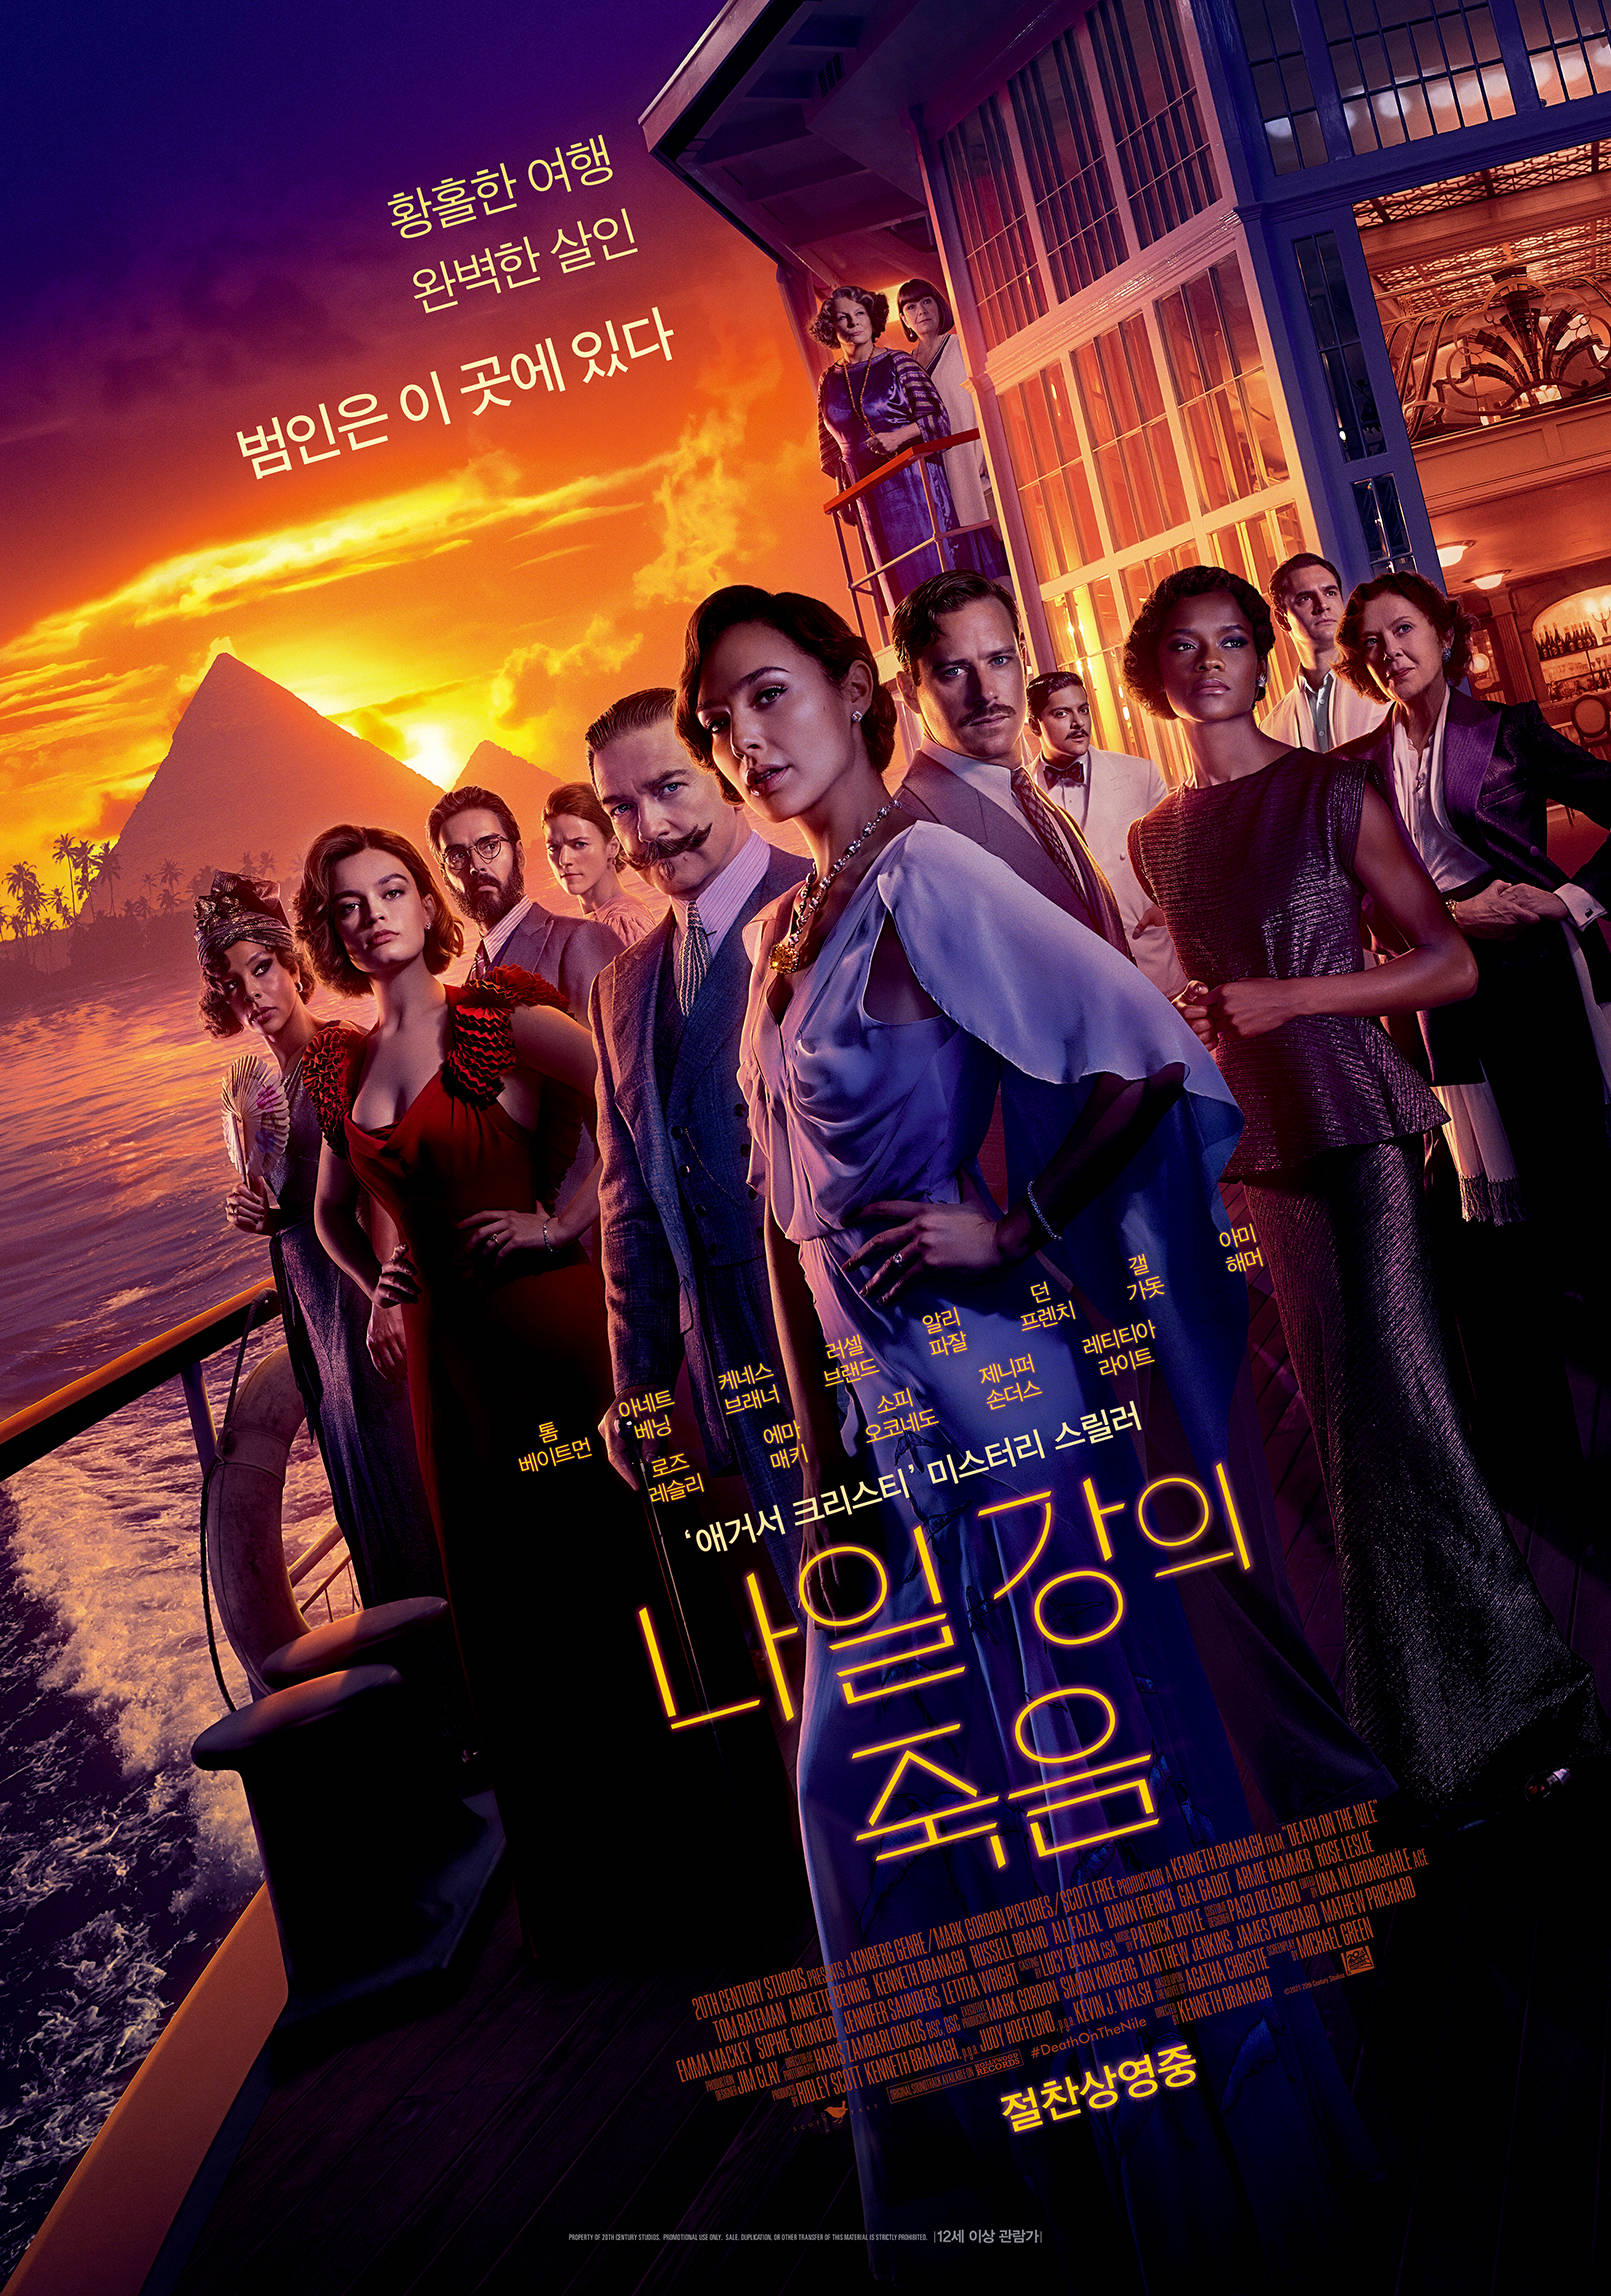 尼罗河上的惨案 夺韩国票房冠军 海盗2 名列第二位 观影 电影 成绩